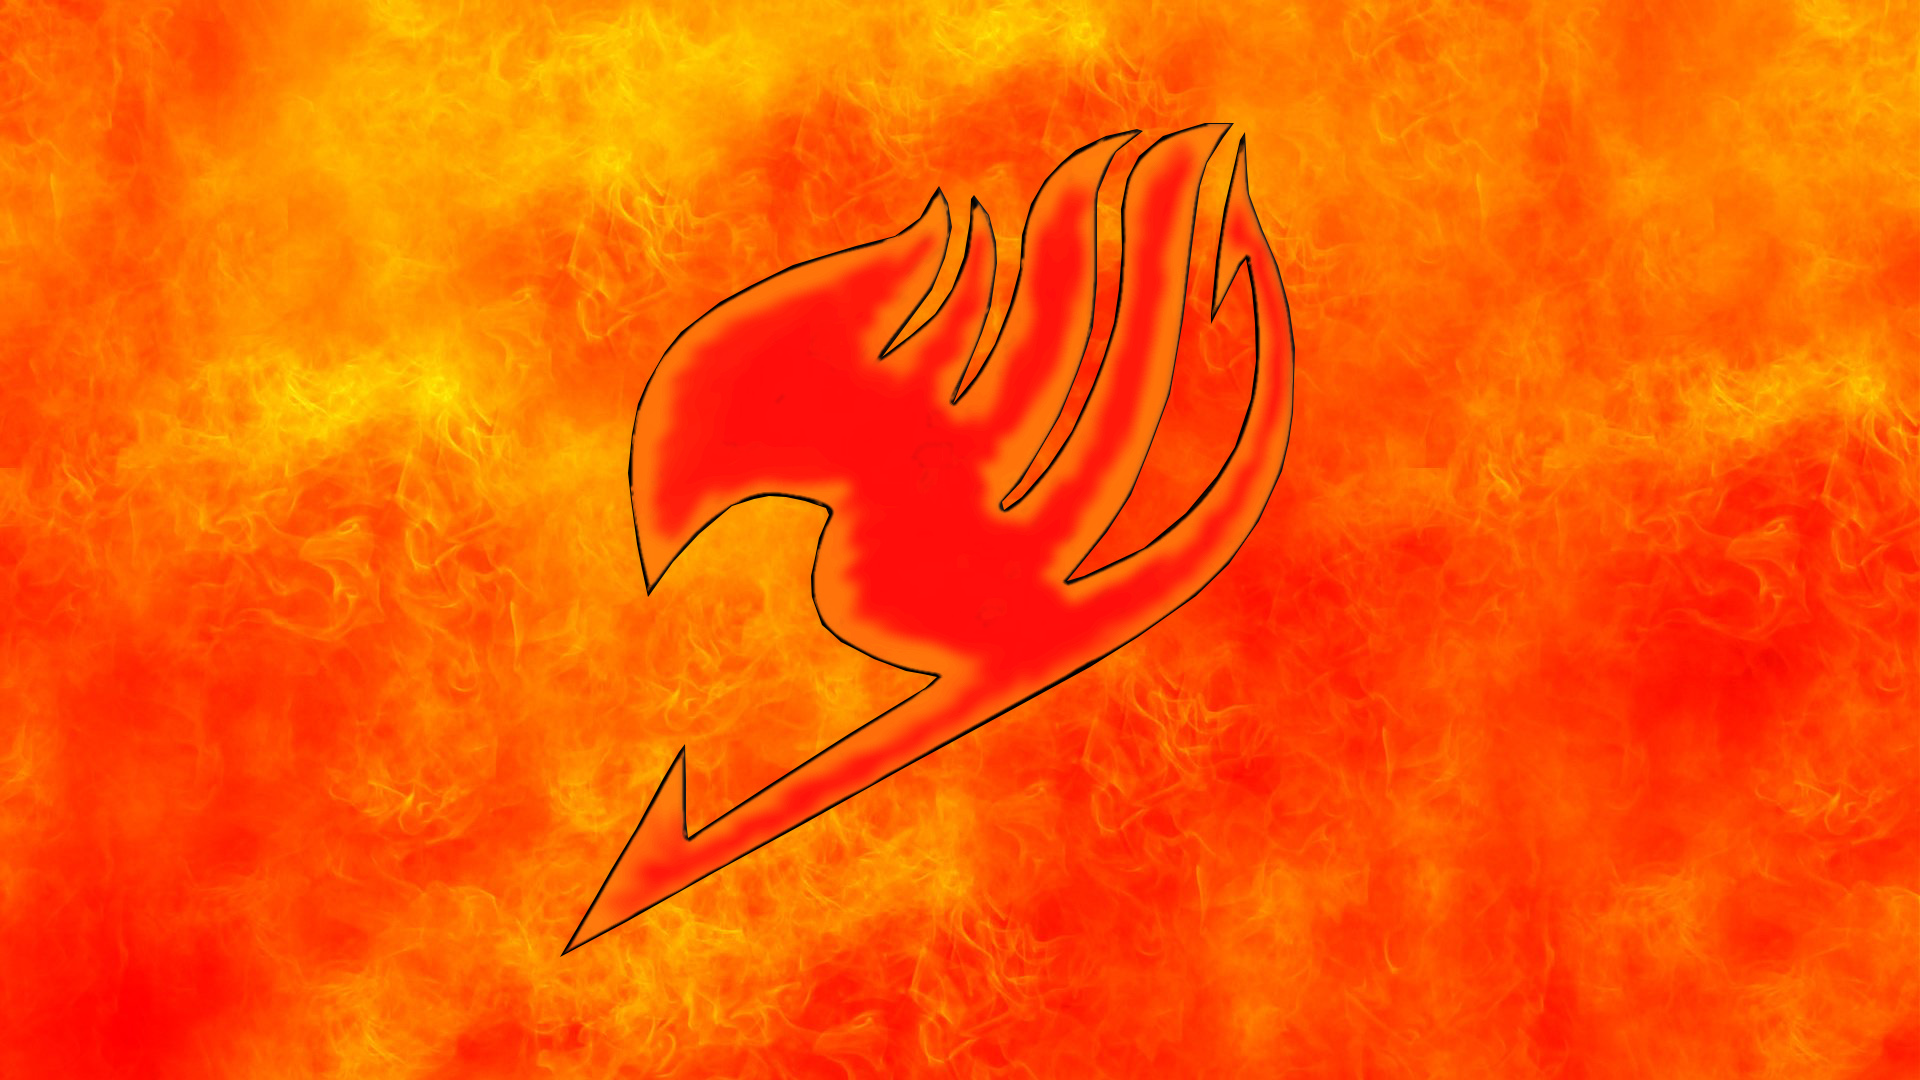 fairy tail logo orange